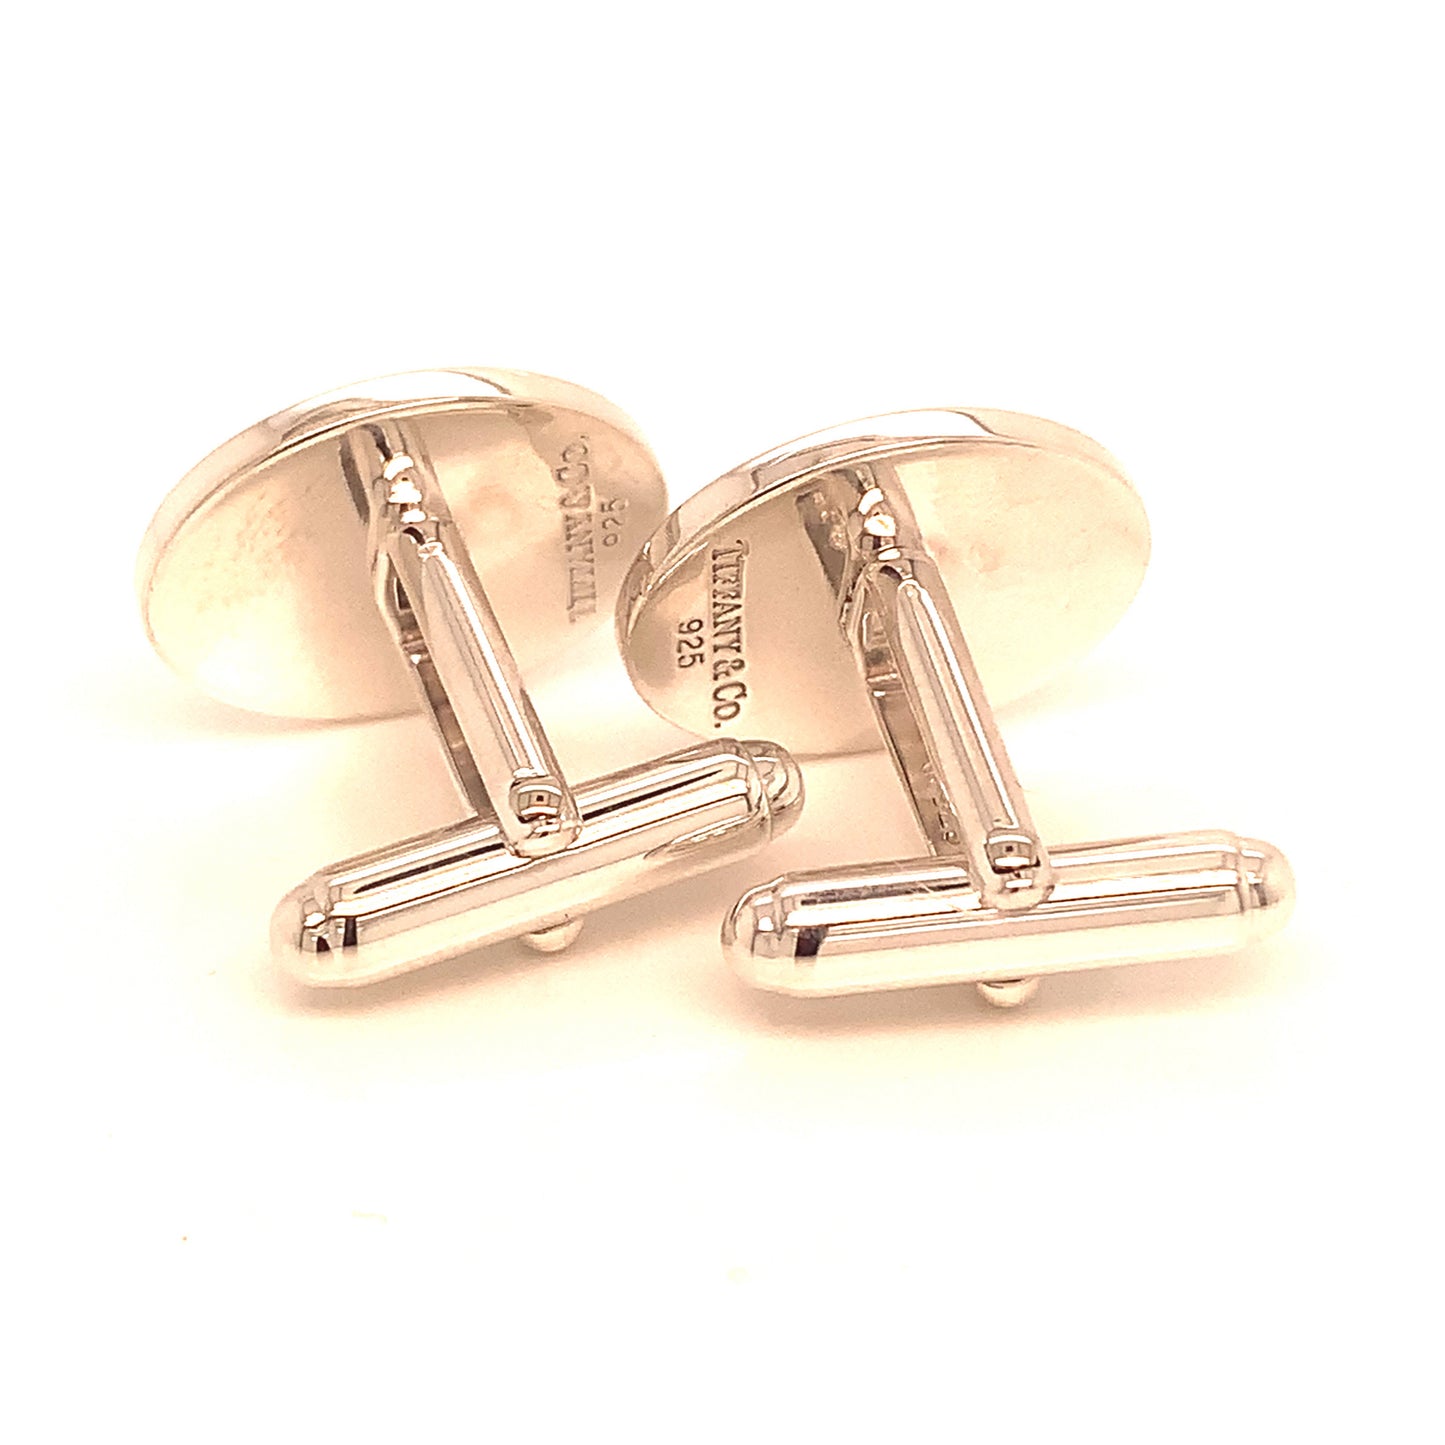 Tiffany & Co Estate Sterling Silver Oval Cufflinks 12.10 Grams TIF121 - Certified Estate Jewelry